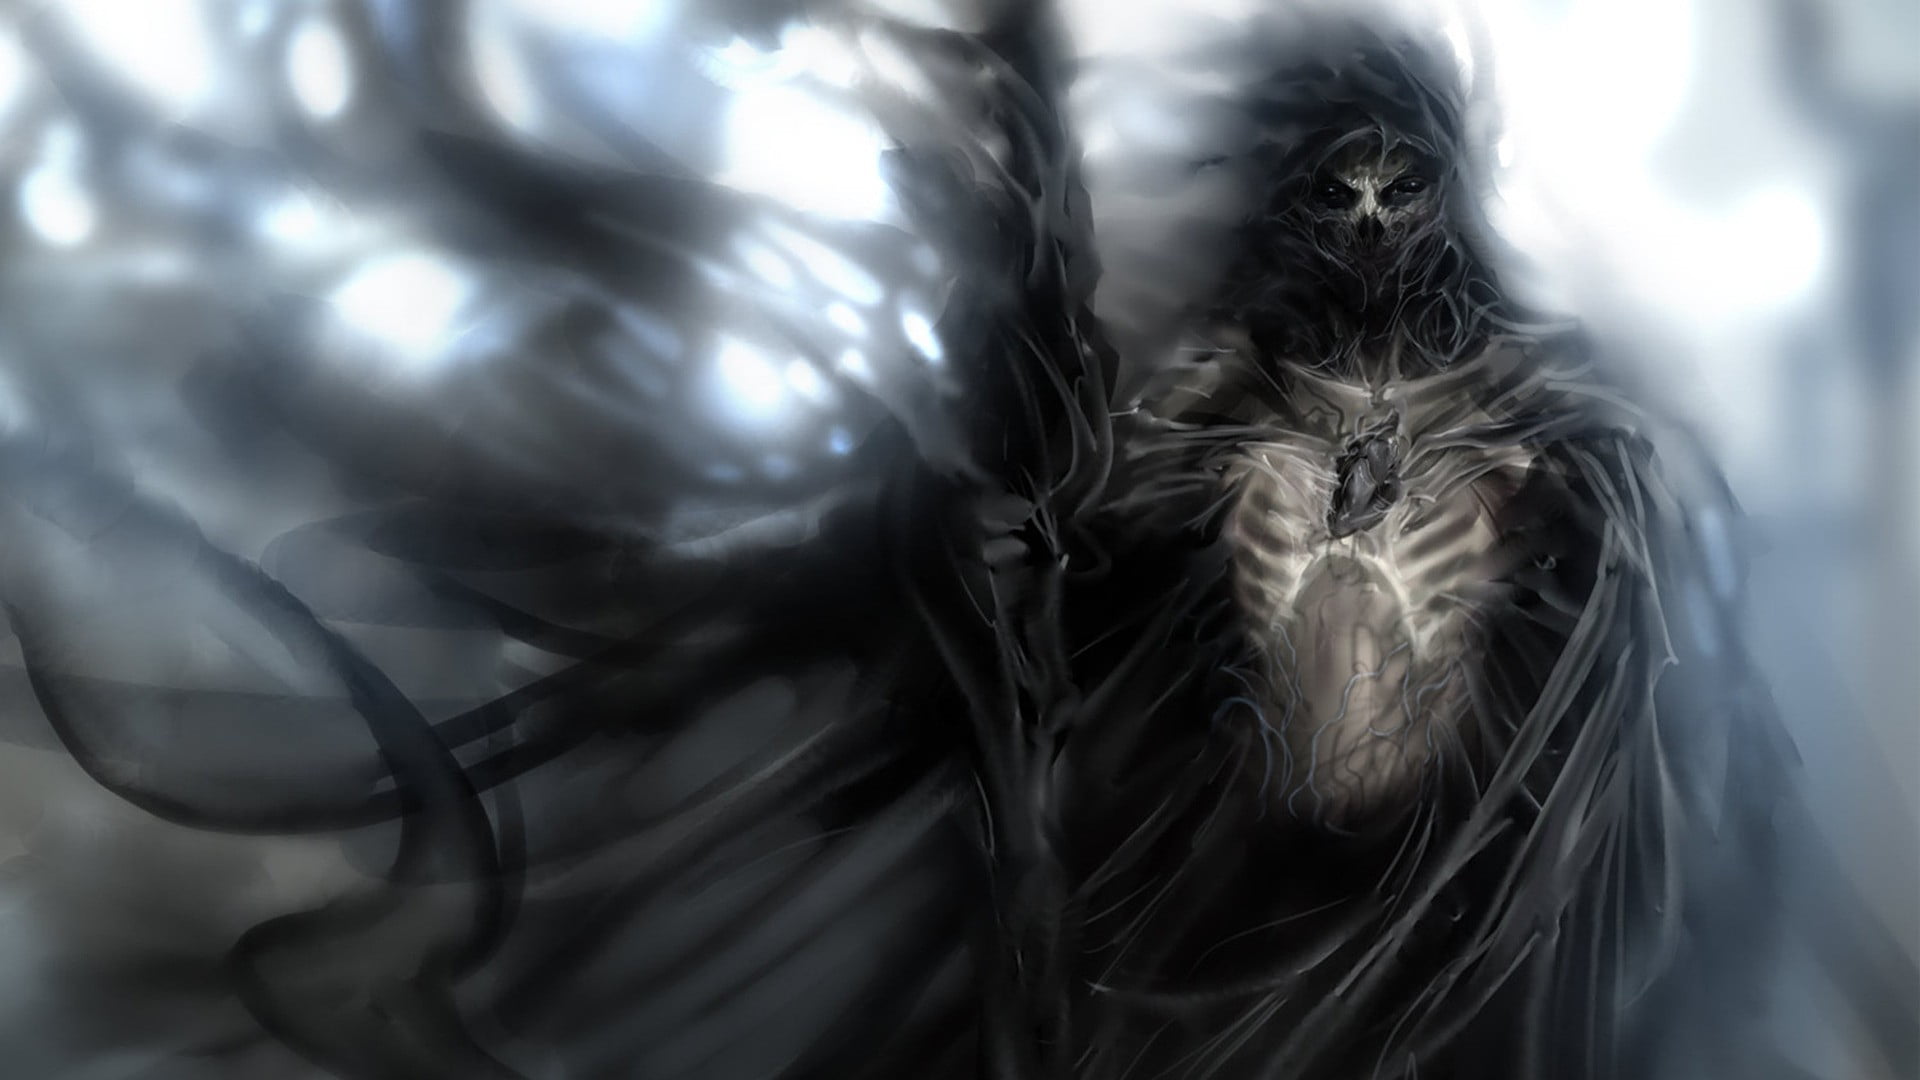 Black character 3D wallpaper, death, heart, fantasy art, Grim Reaper HD  wallpaper